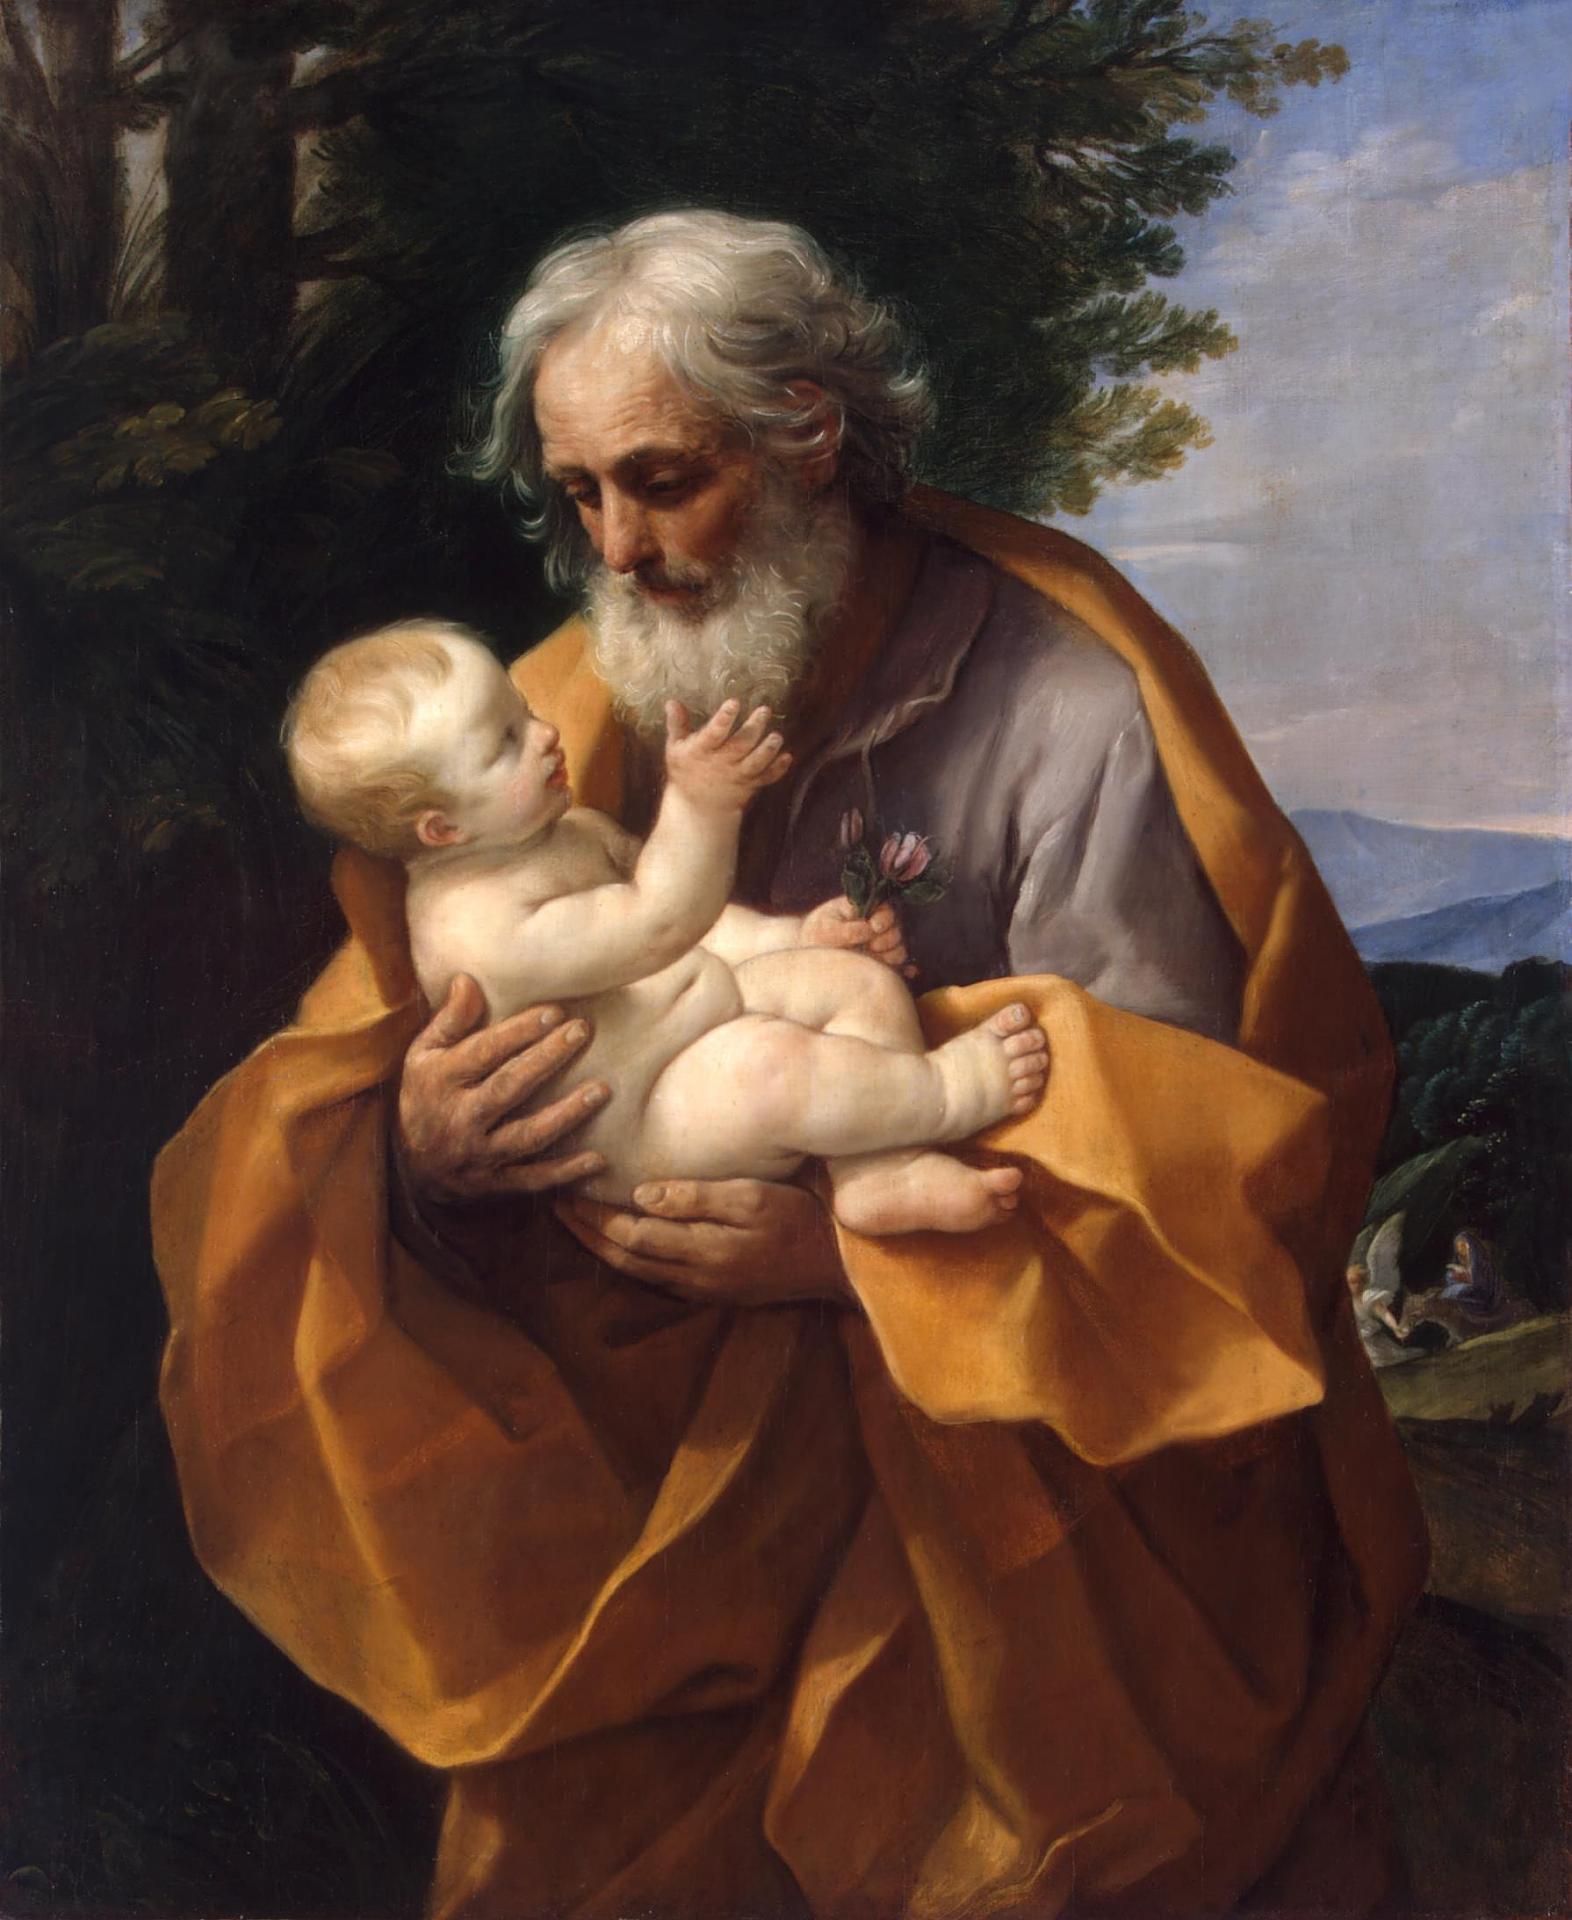 Гвидо Рени. "Святой Иосиф с Младенцем Христом на руках". Около 1635. Эрмитаж, Санкт-Петербург.